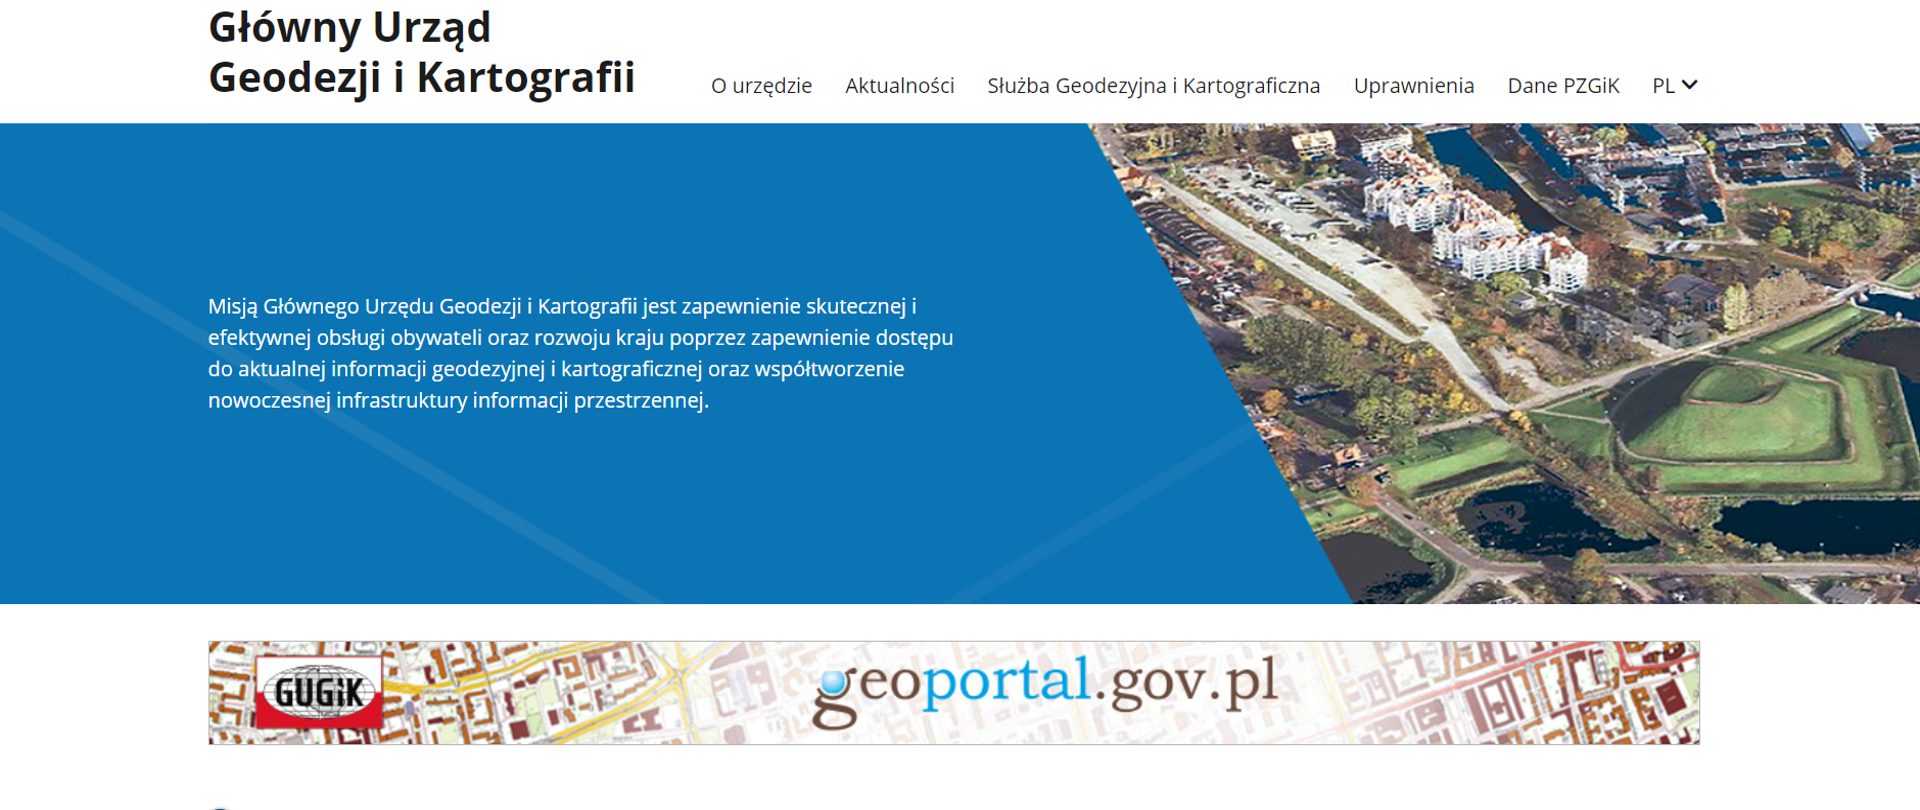 Zrzut ekranu przedstawiający nową stronę GUGiK w witrynie gov.pl. Na górze znajduje się baner z widokiem chmury punktów, poniżej baner z logo GUGiK i Geoportalu, dalej Tweety GUGiK, aktualności, ważne informacje oraz dane adresowe Urzędu.